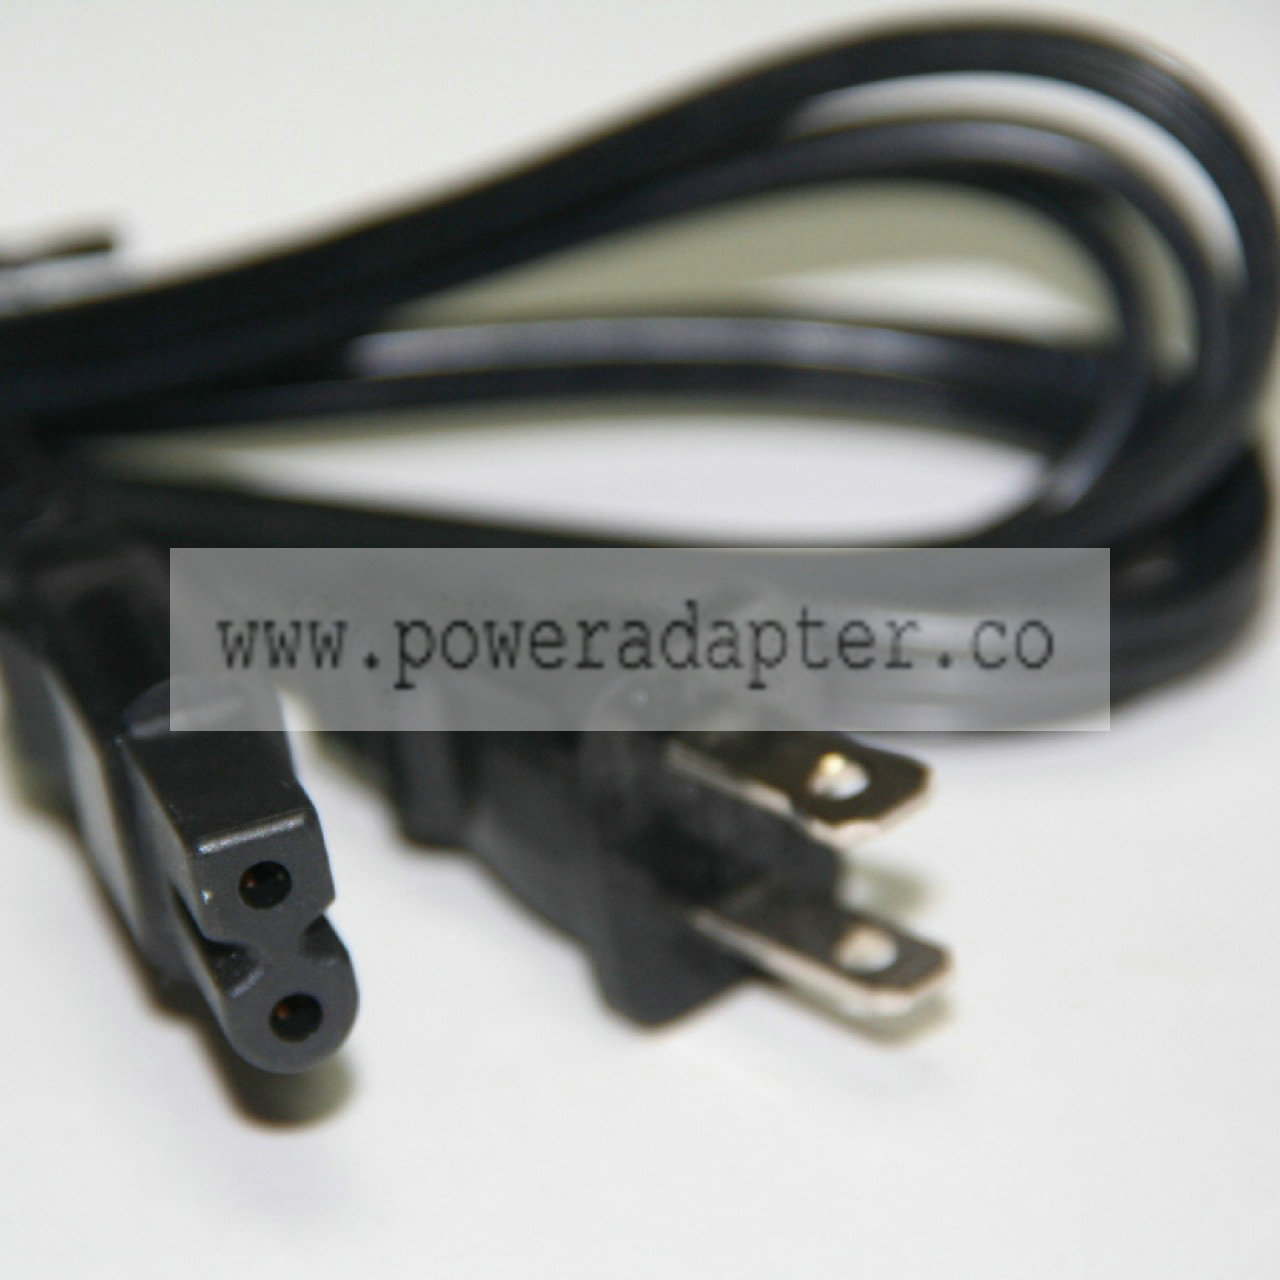 Replacement Power Cable: Stanton / Technics / Tascam / etc for cd / turntable / cassette / etc Product Description Pow - Click Image to Close